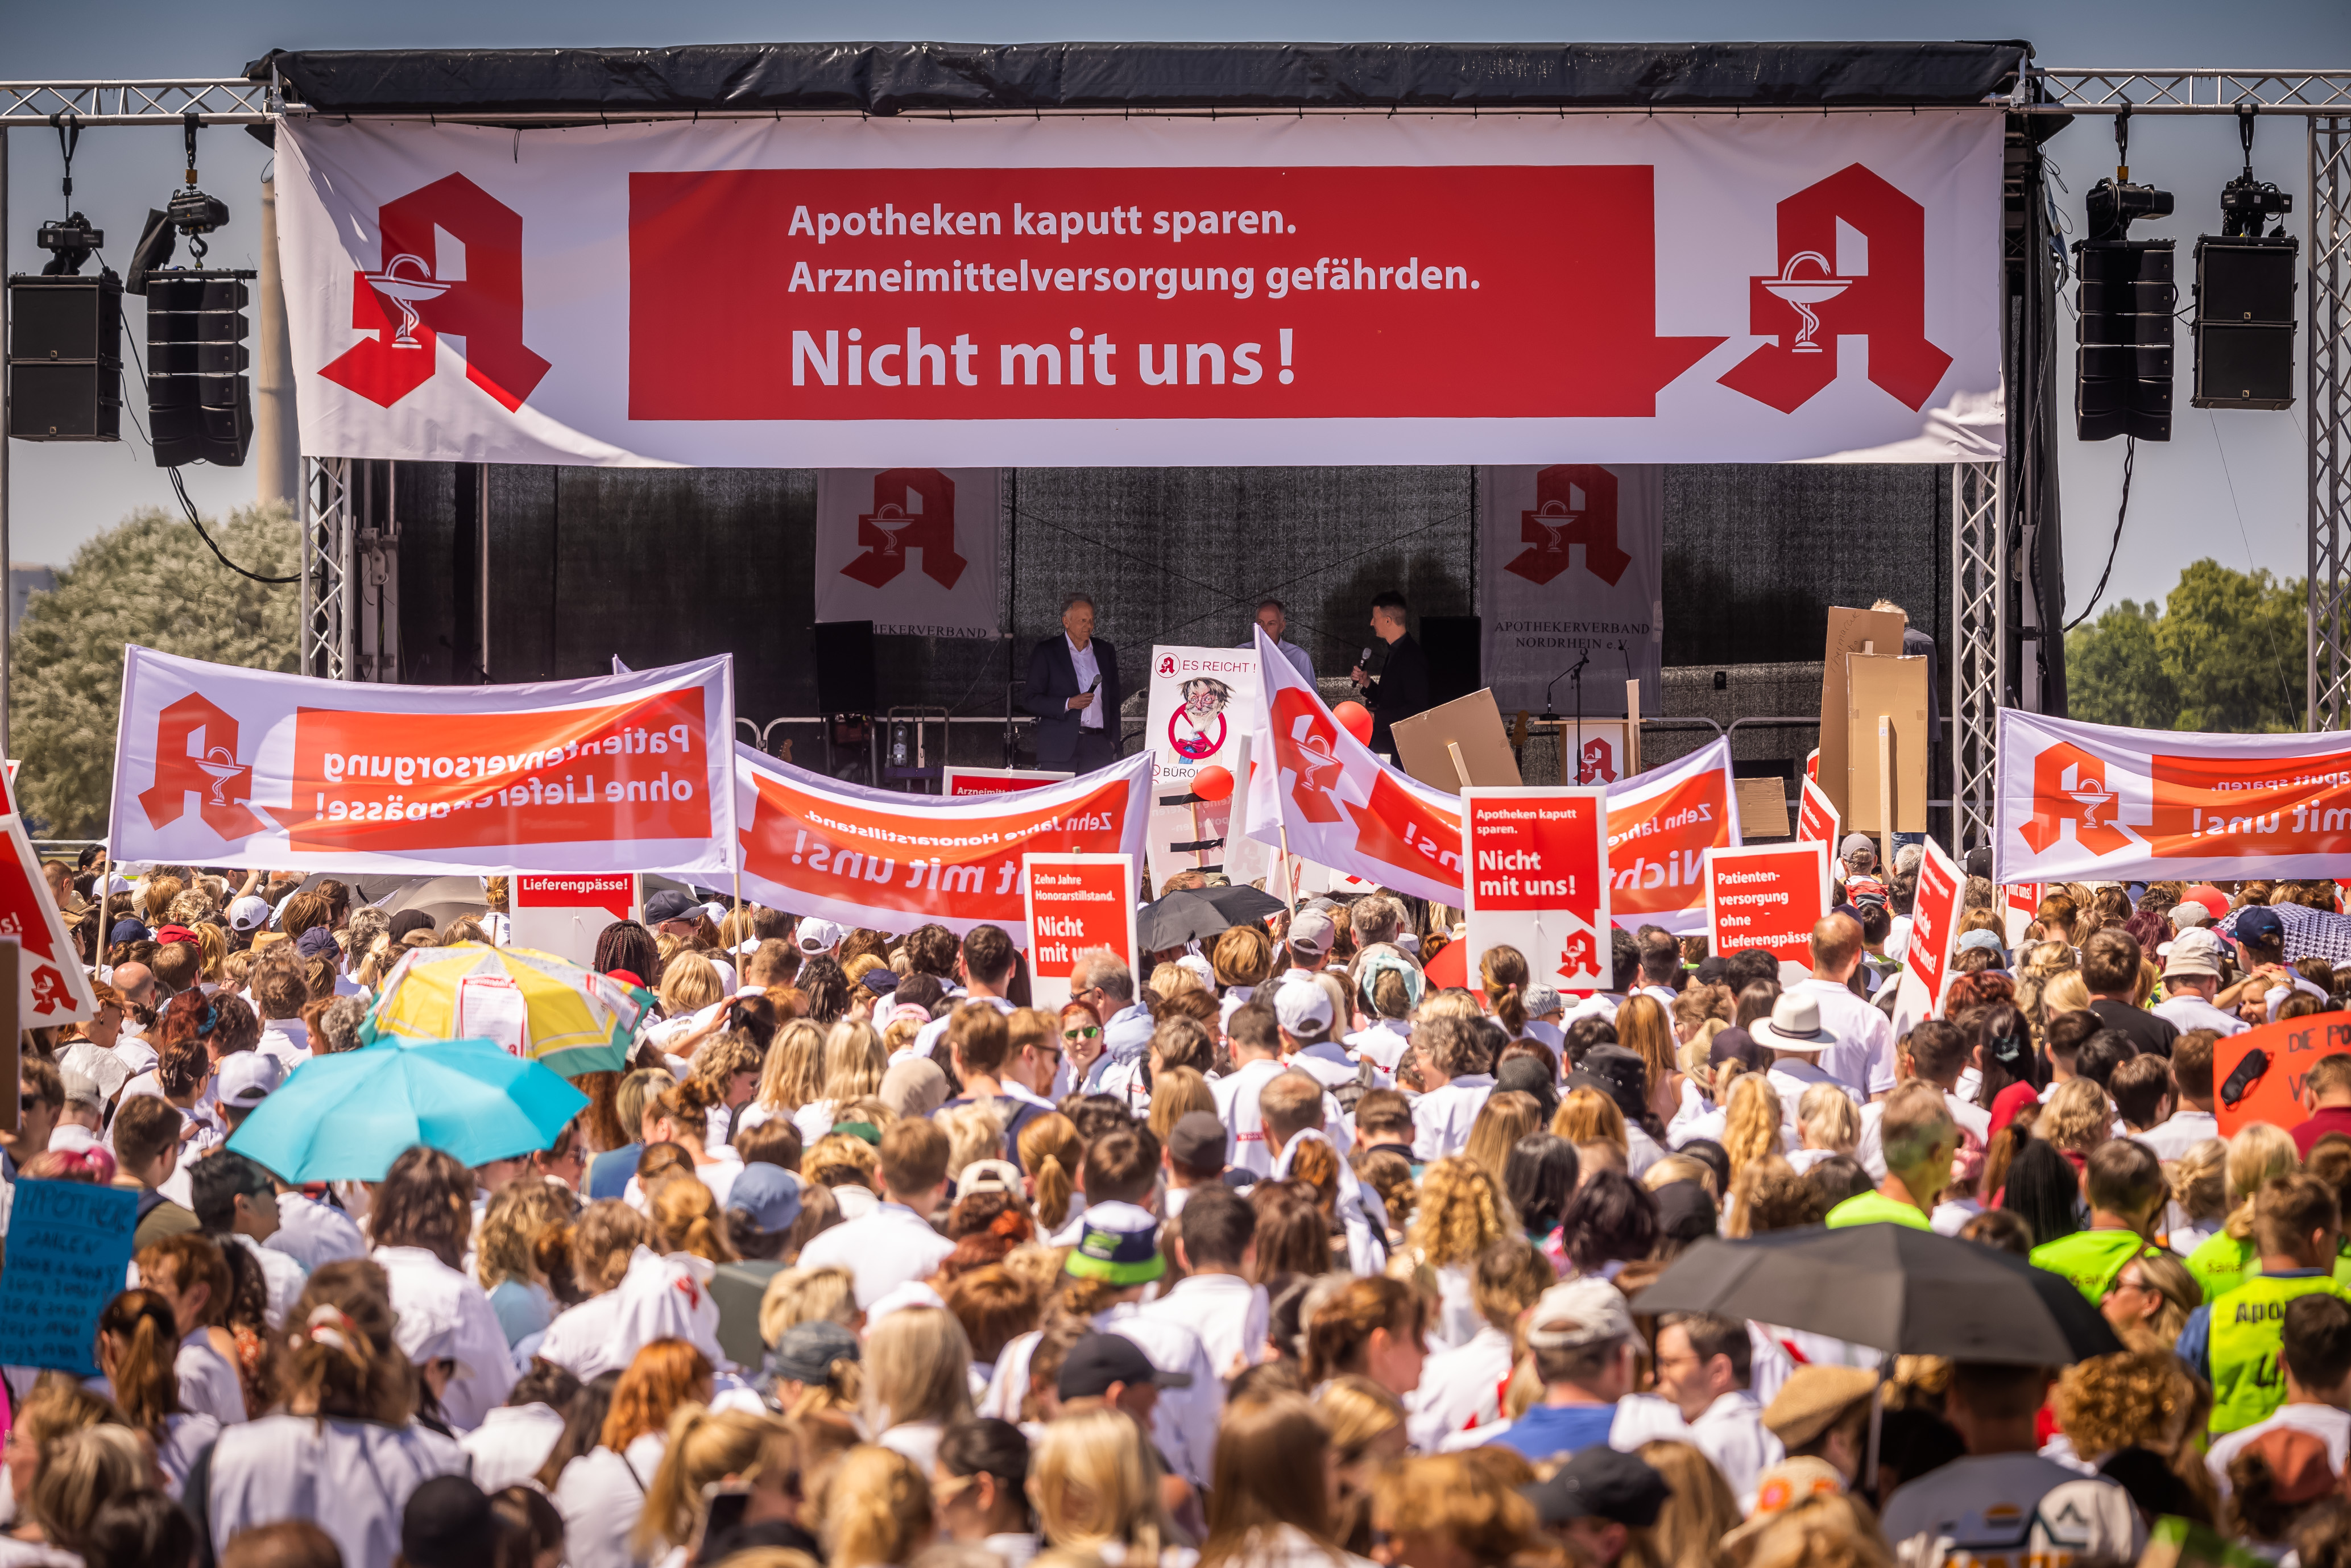 Menschenmassen auf dem Burgplatz in Düsseldorf bei einer Apotheken-Demonstration